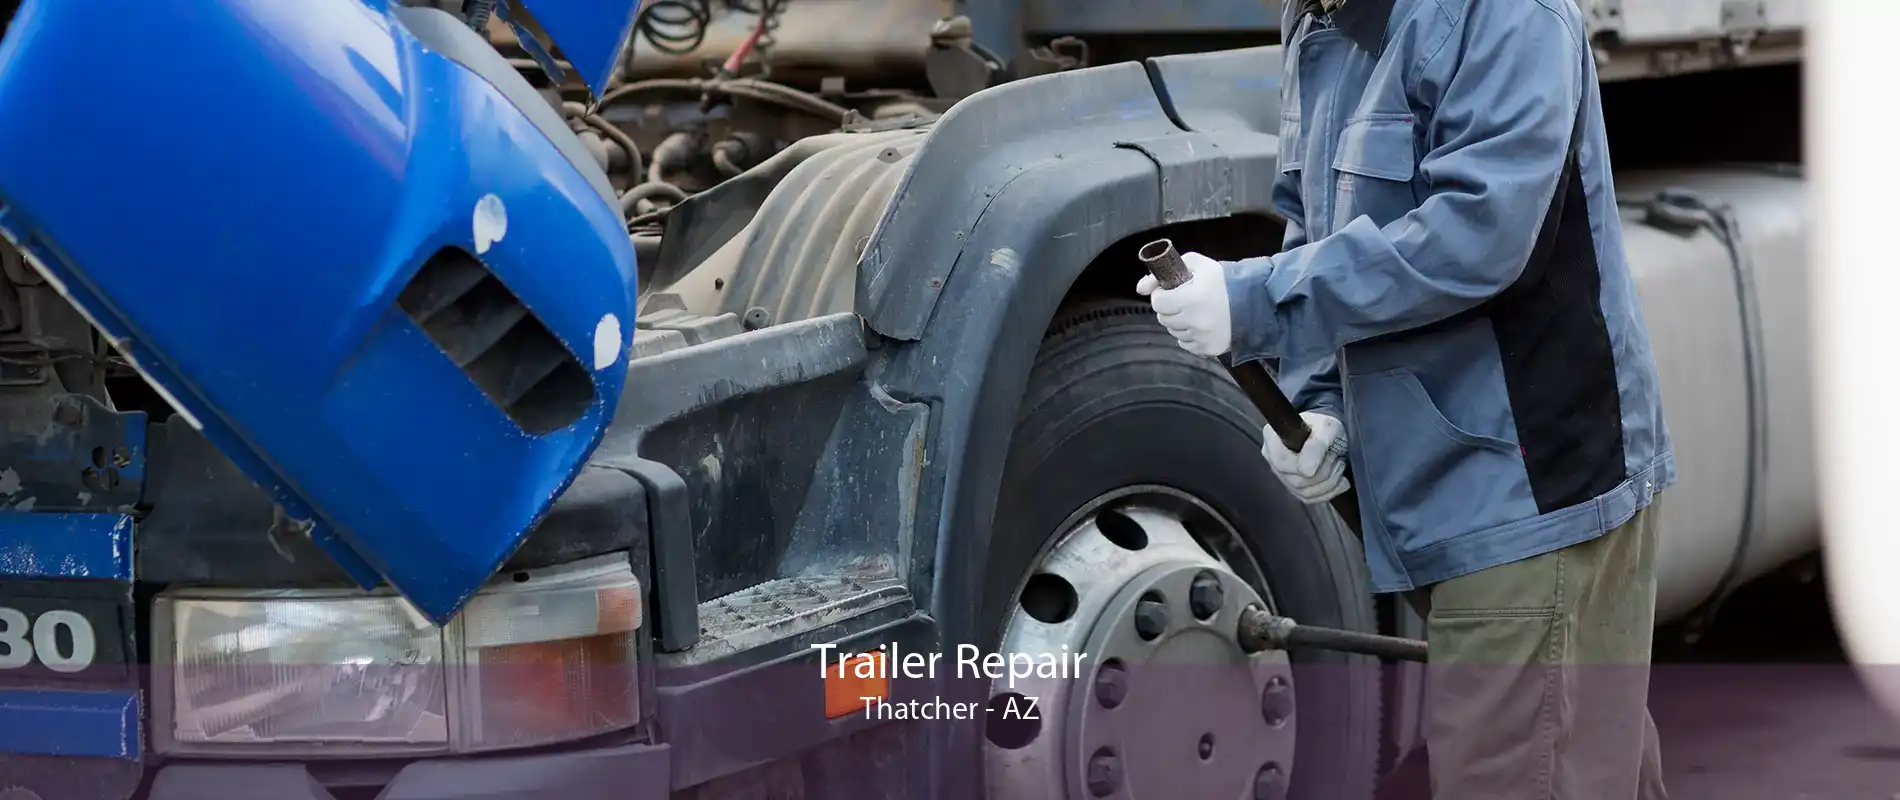 Trailer Repair Thatcher - AZ